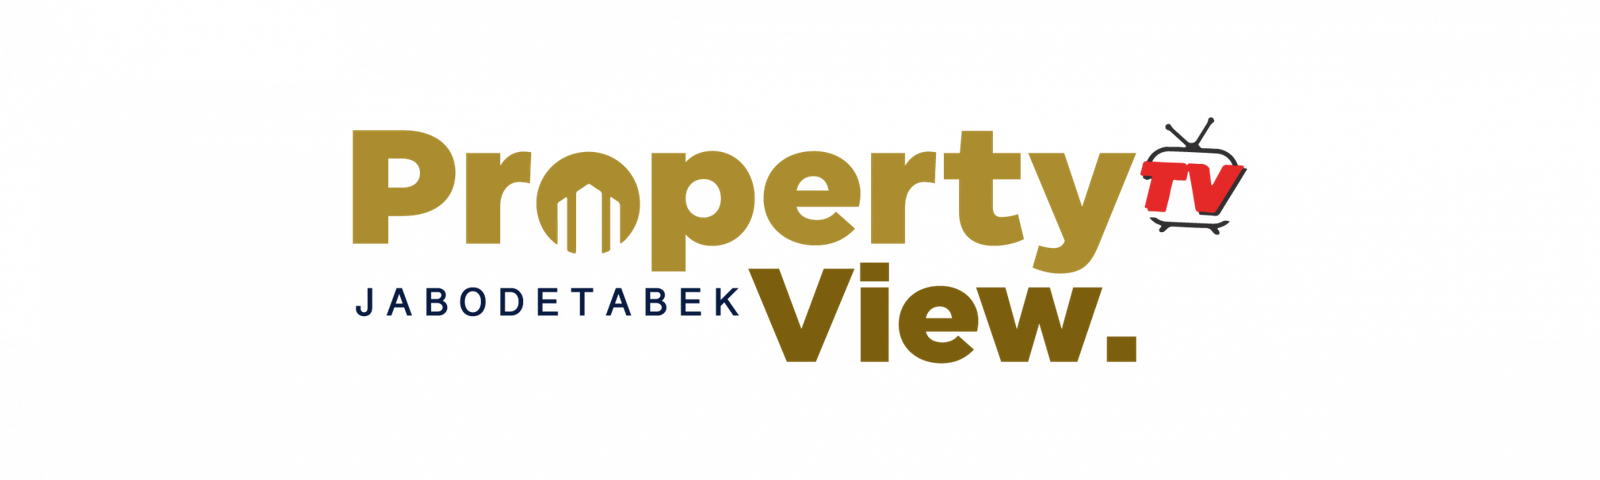 PROPERTY-VIEW-logo